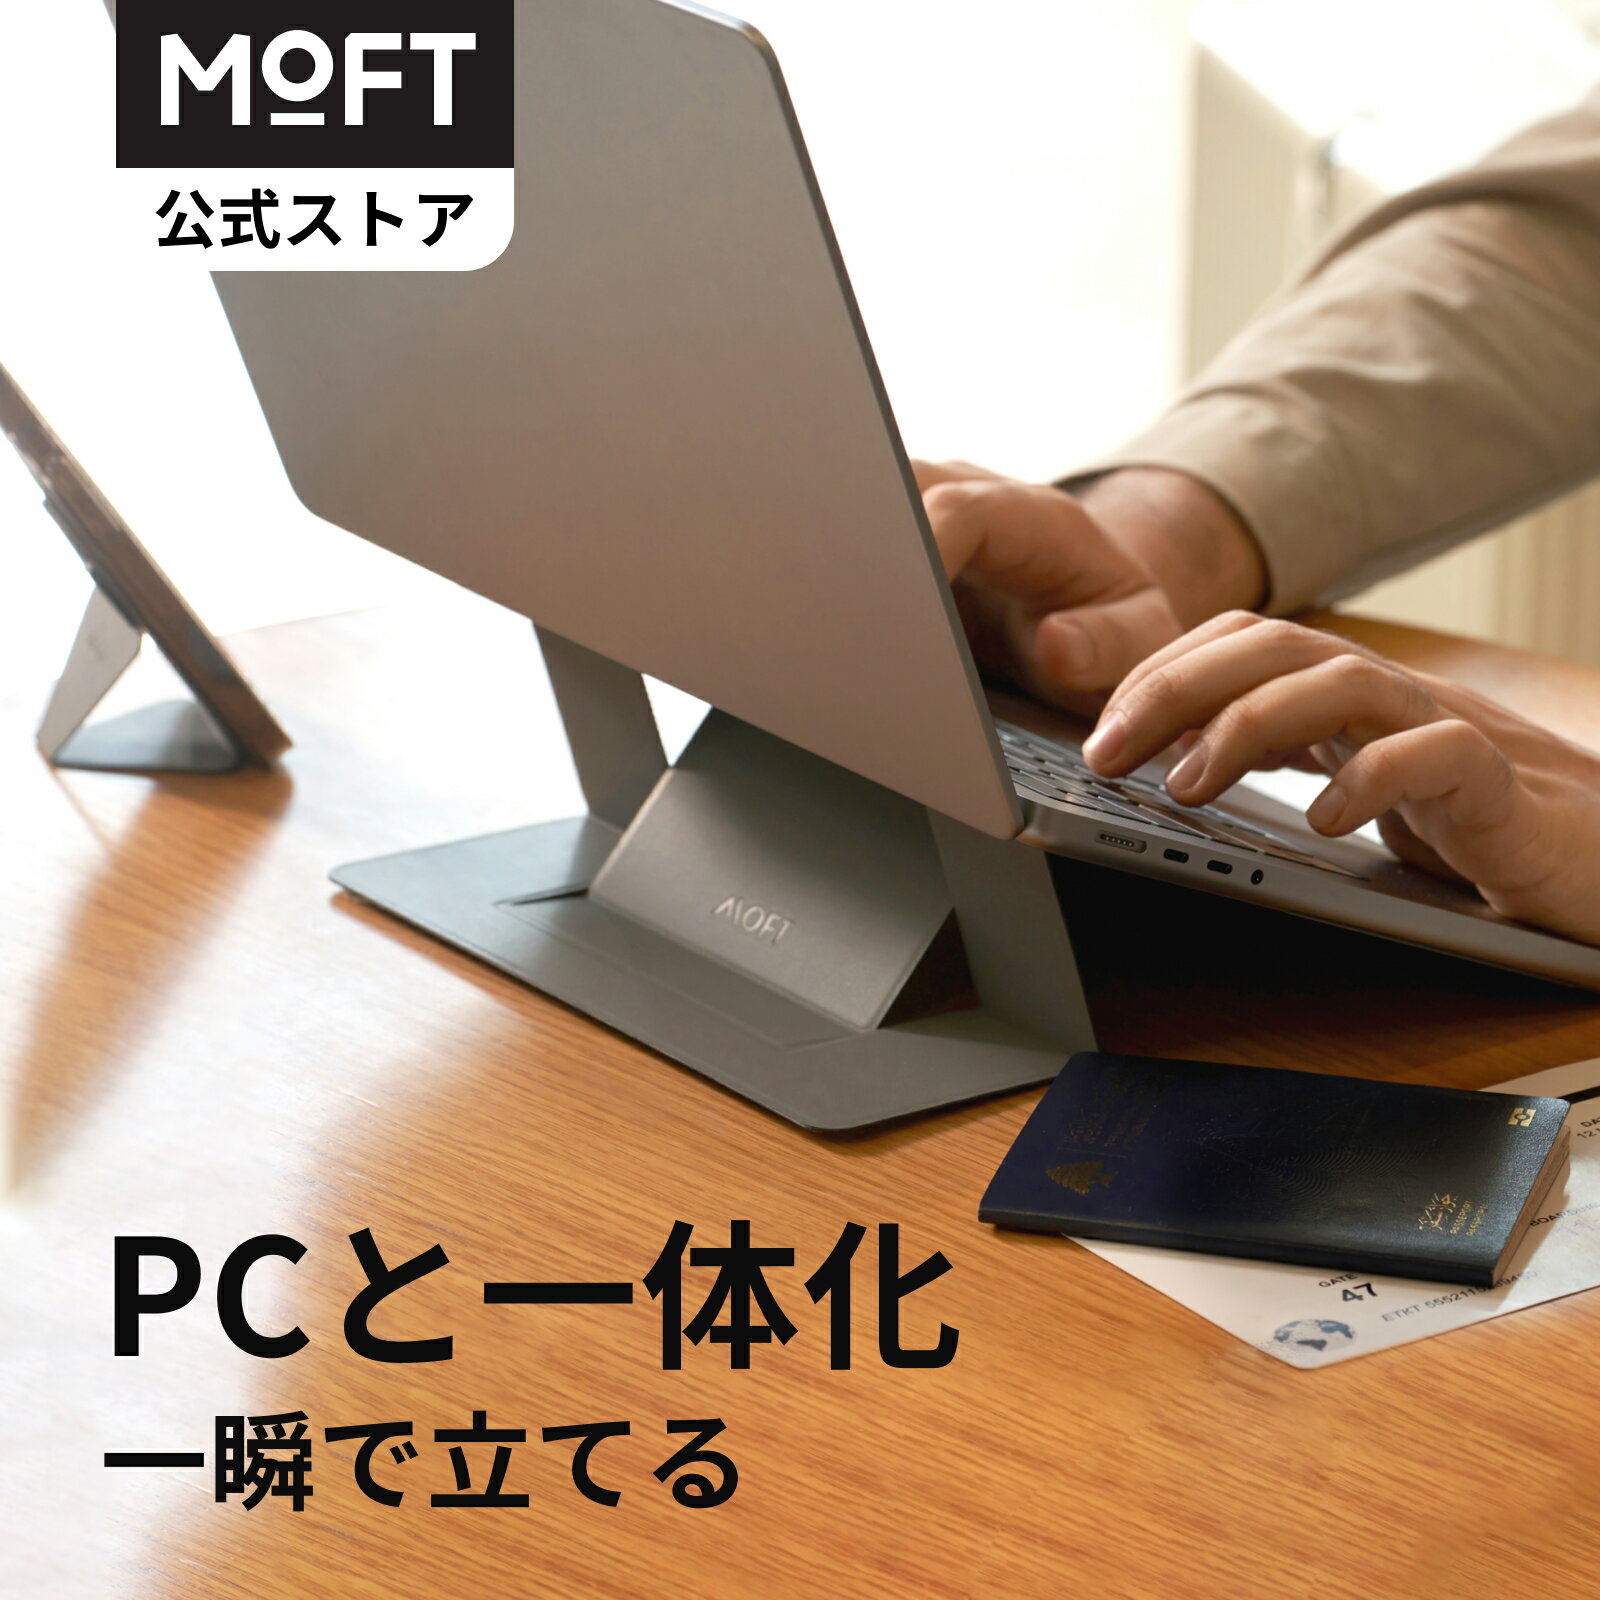 ★アップル / APPLE 11インチiPad Pro(第2世代)用 Magic Keyboard 日本語(JIS) MXQT2J/A [ブラック]【送料無料】